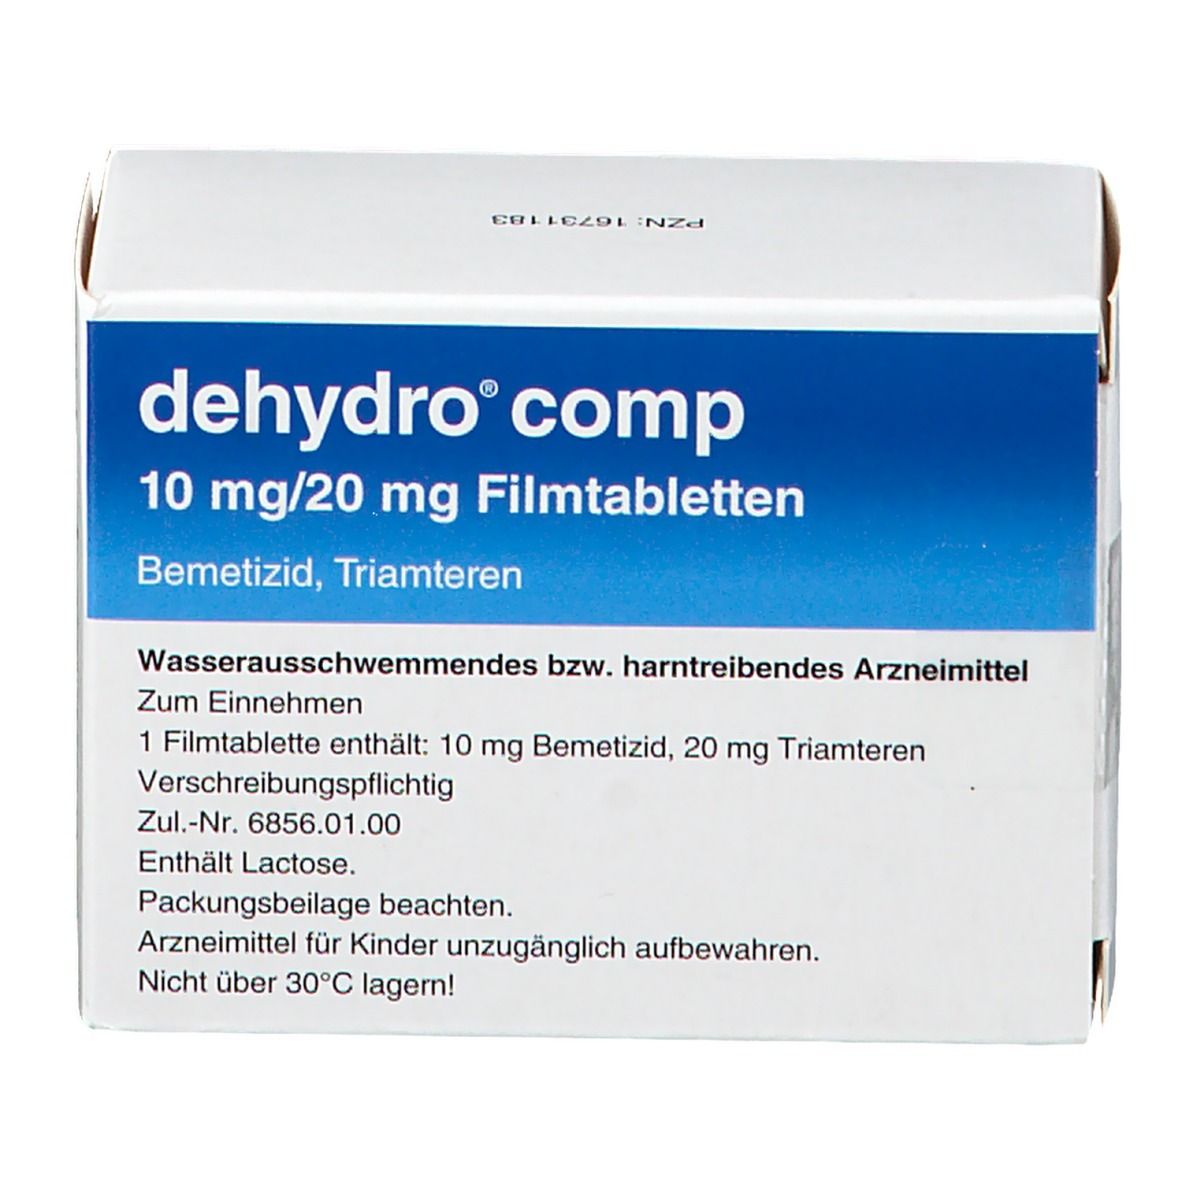 dehydro® comp 10 mg/20 mg